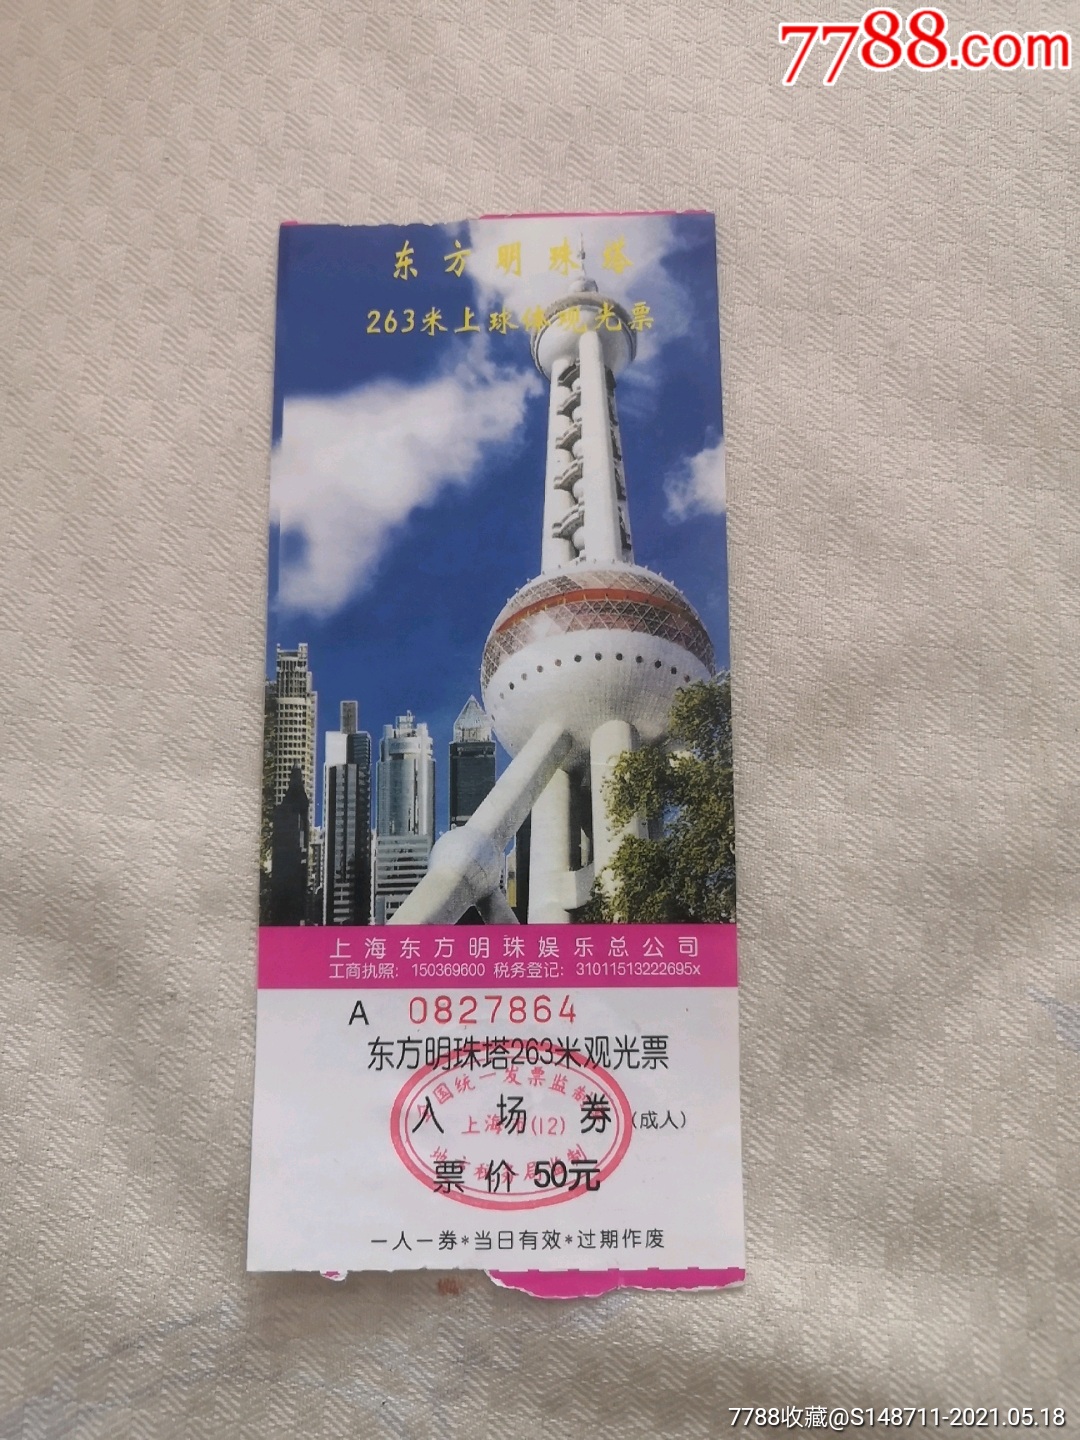 《东方明珠塔》(263米观光层)入场券